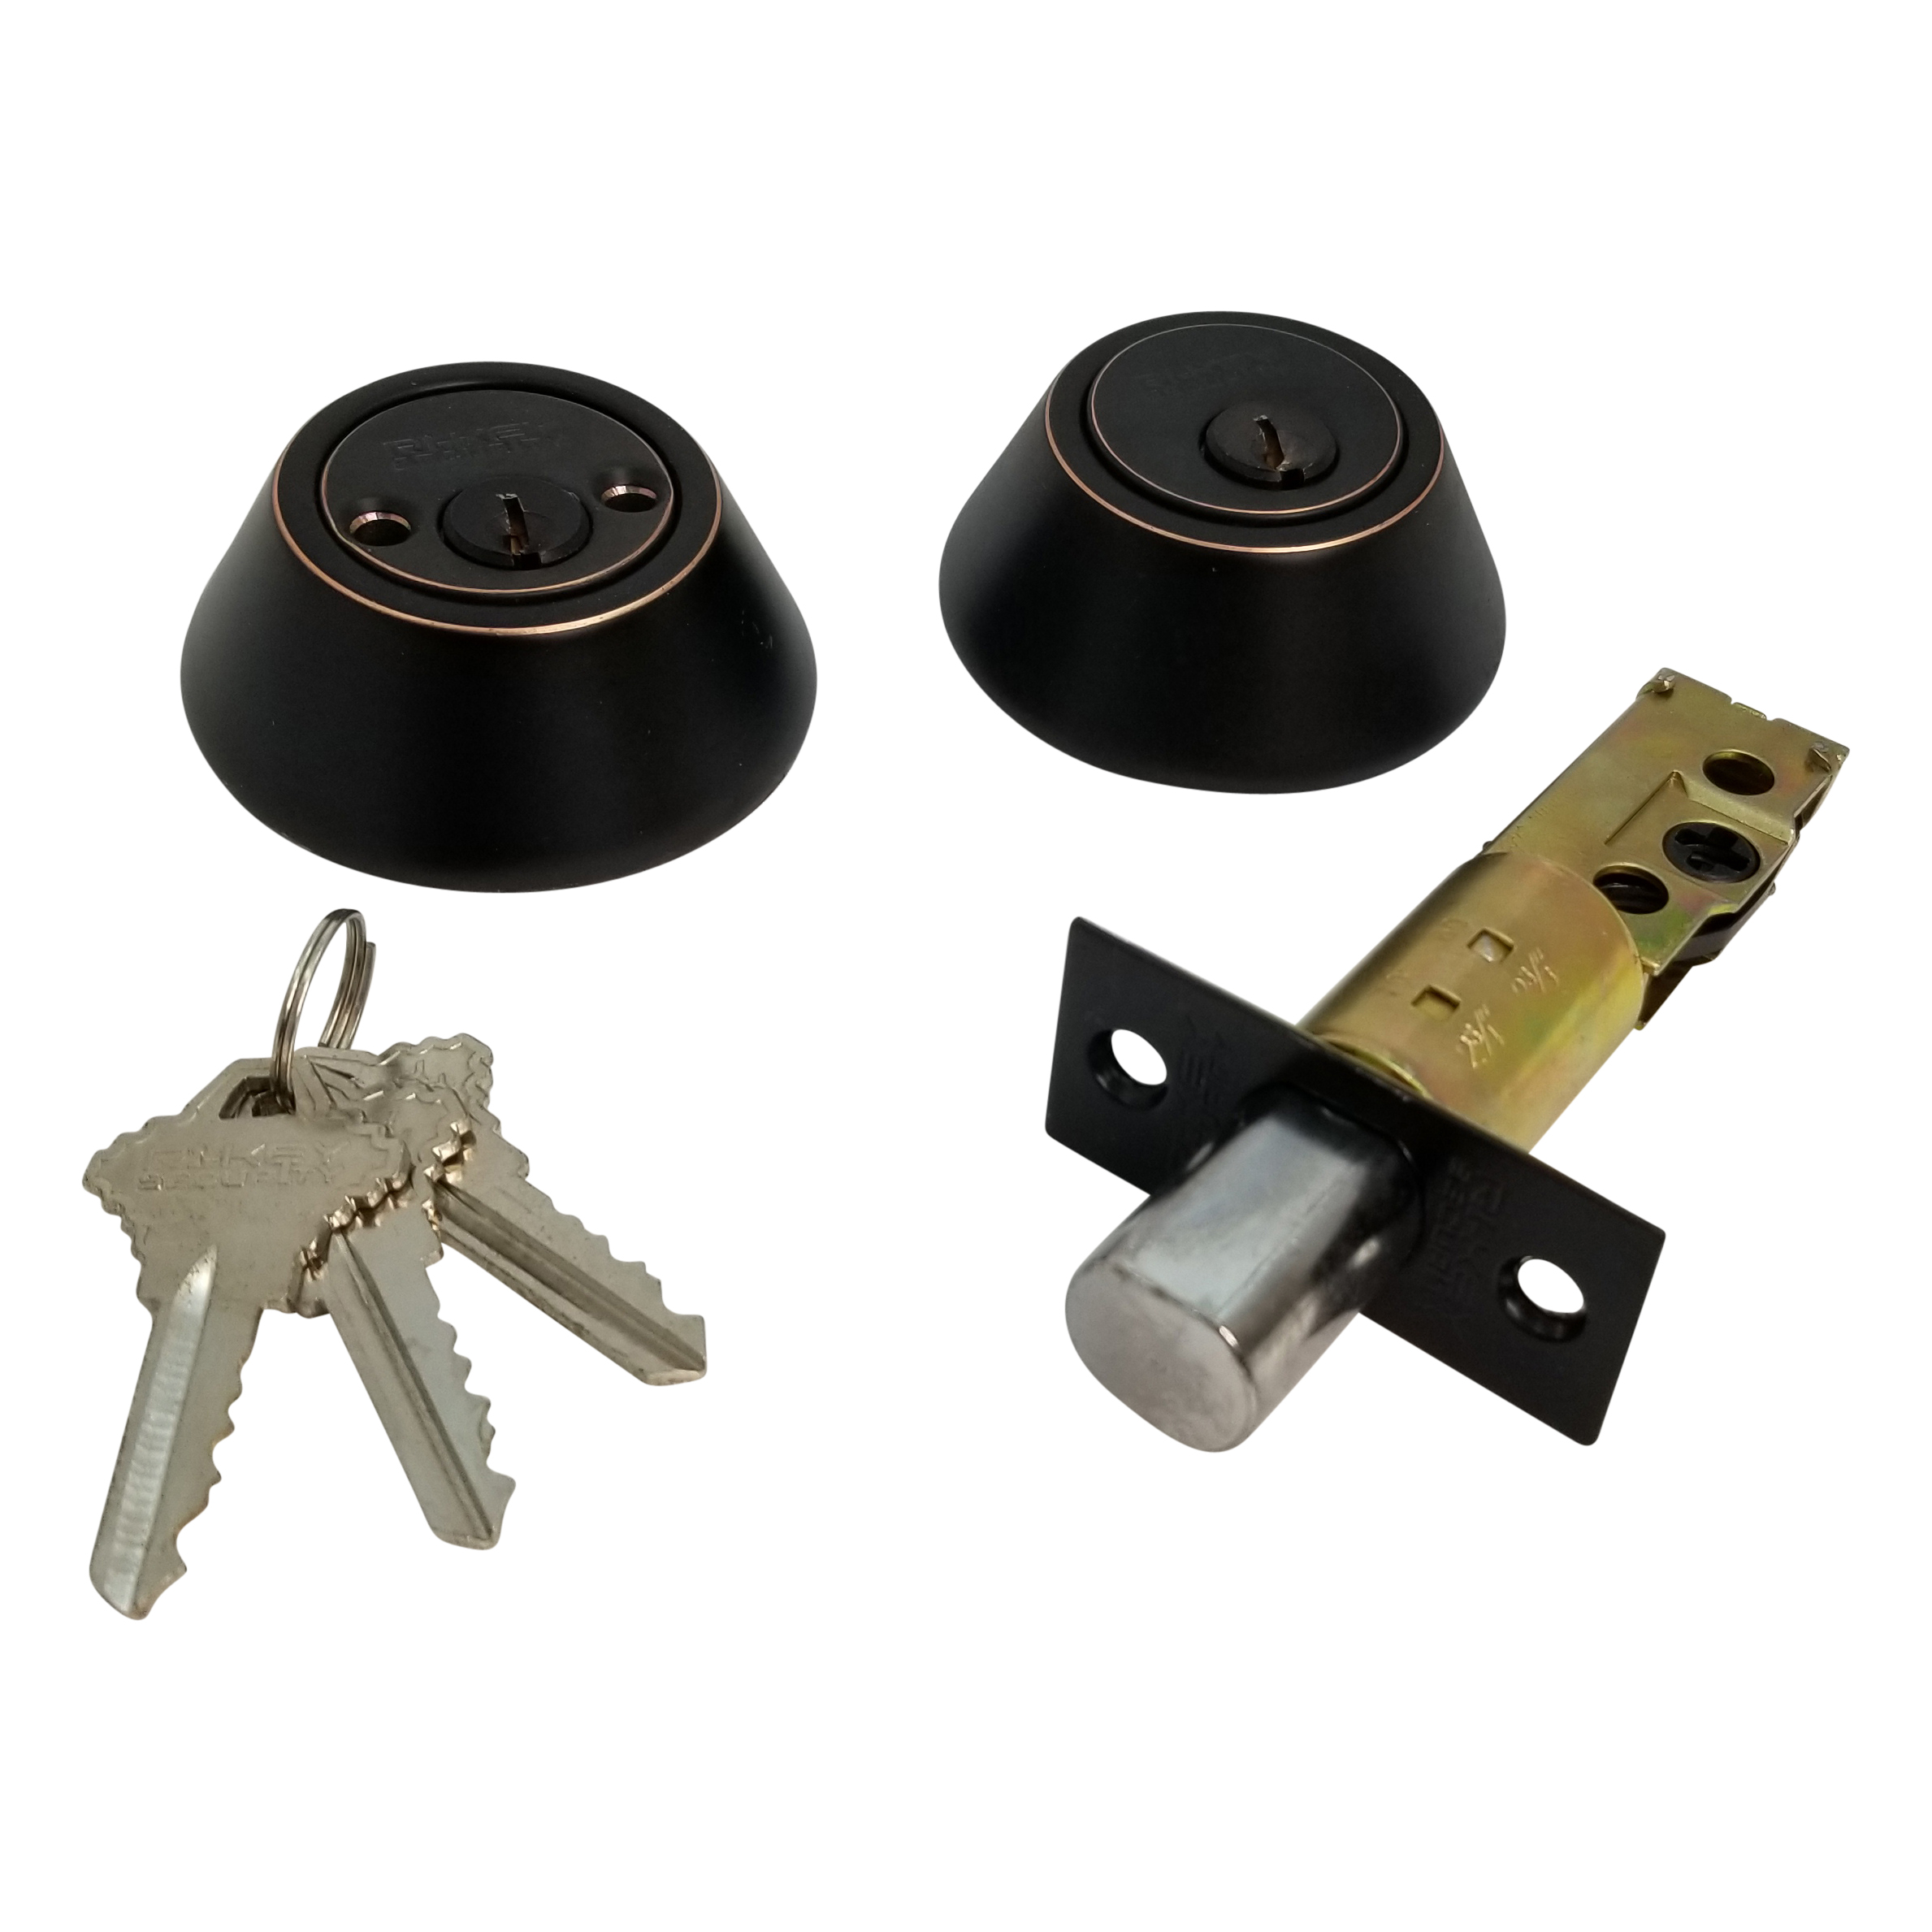 keyed alike door locks and deadbolts